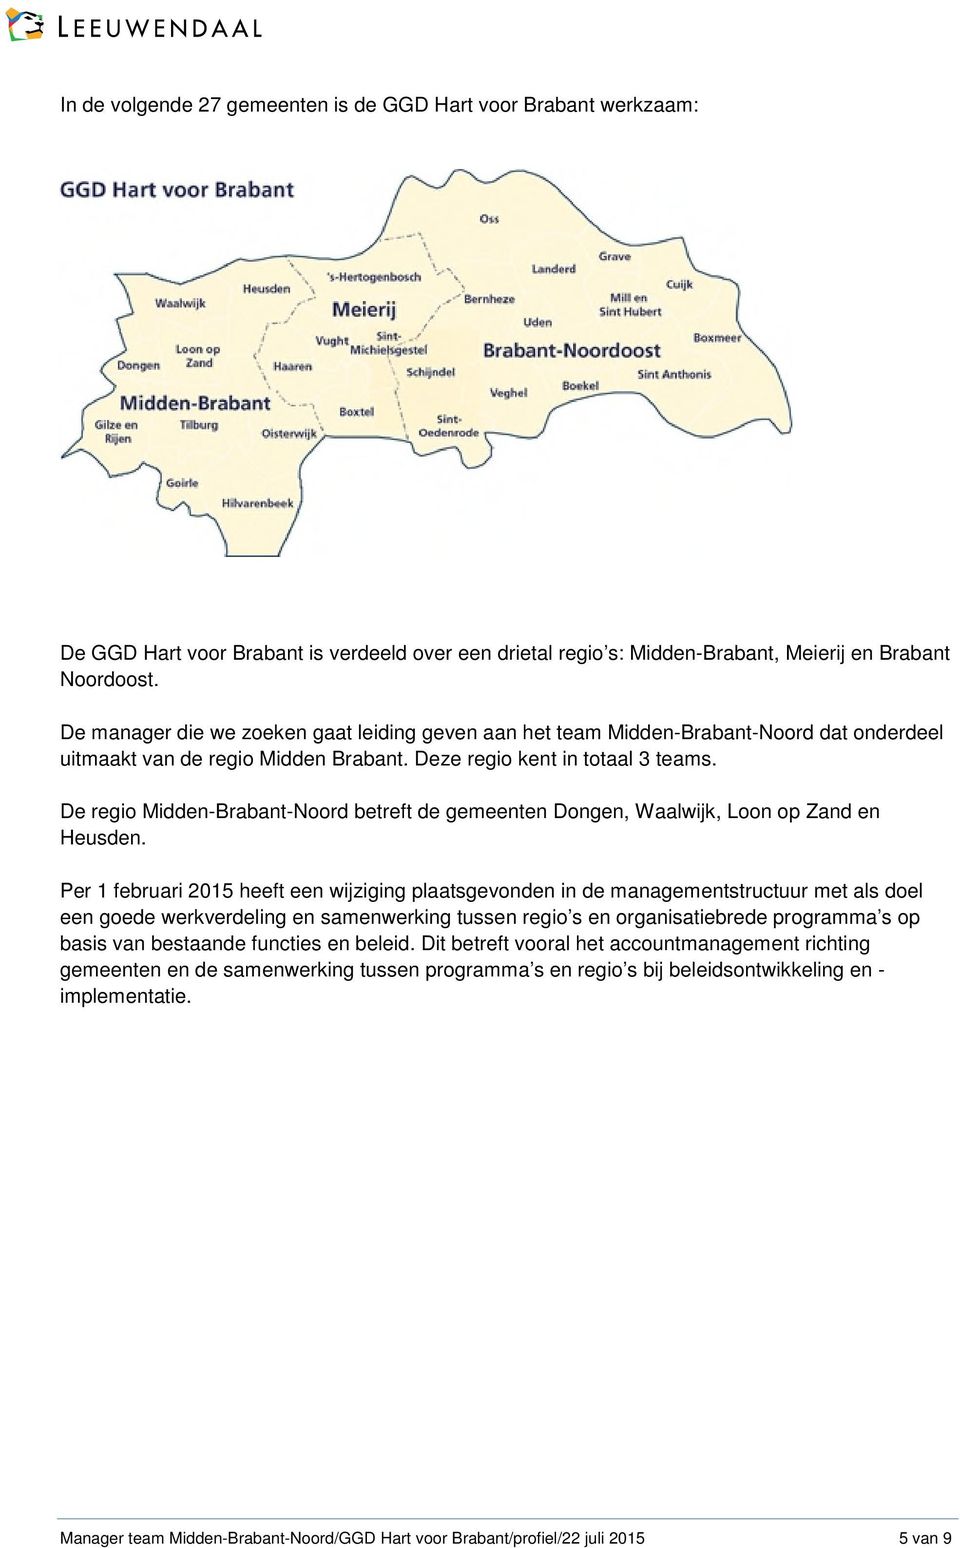 De regio Midden-Brabant-Noord betreft de gemeenten Dongen, Waalwijk, Loon op Zand en Heusden.